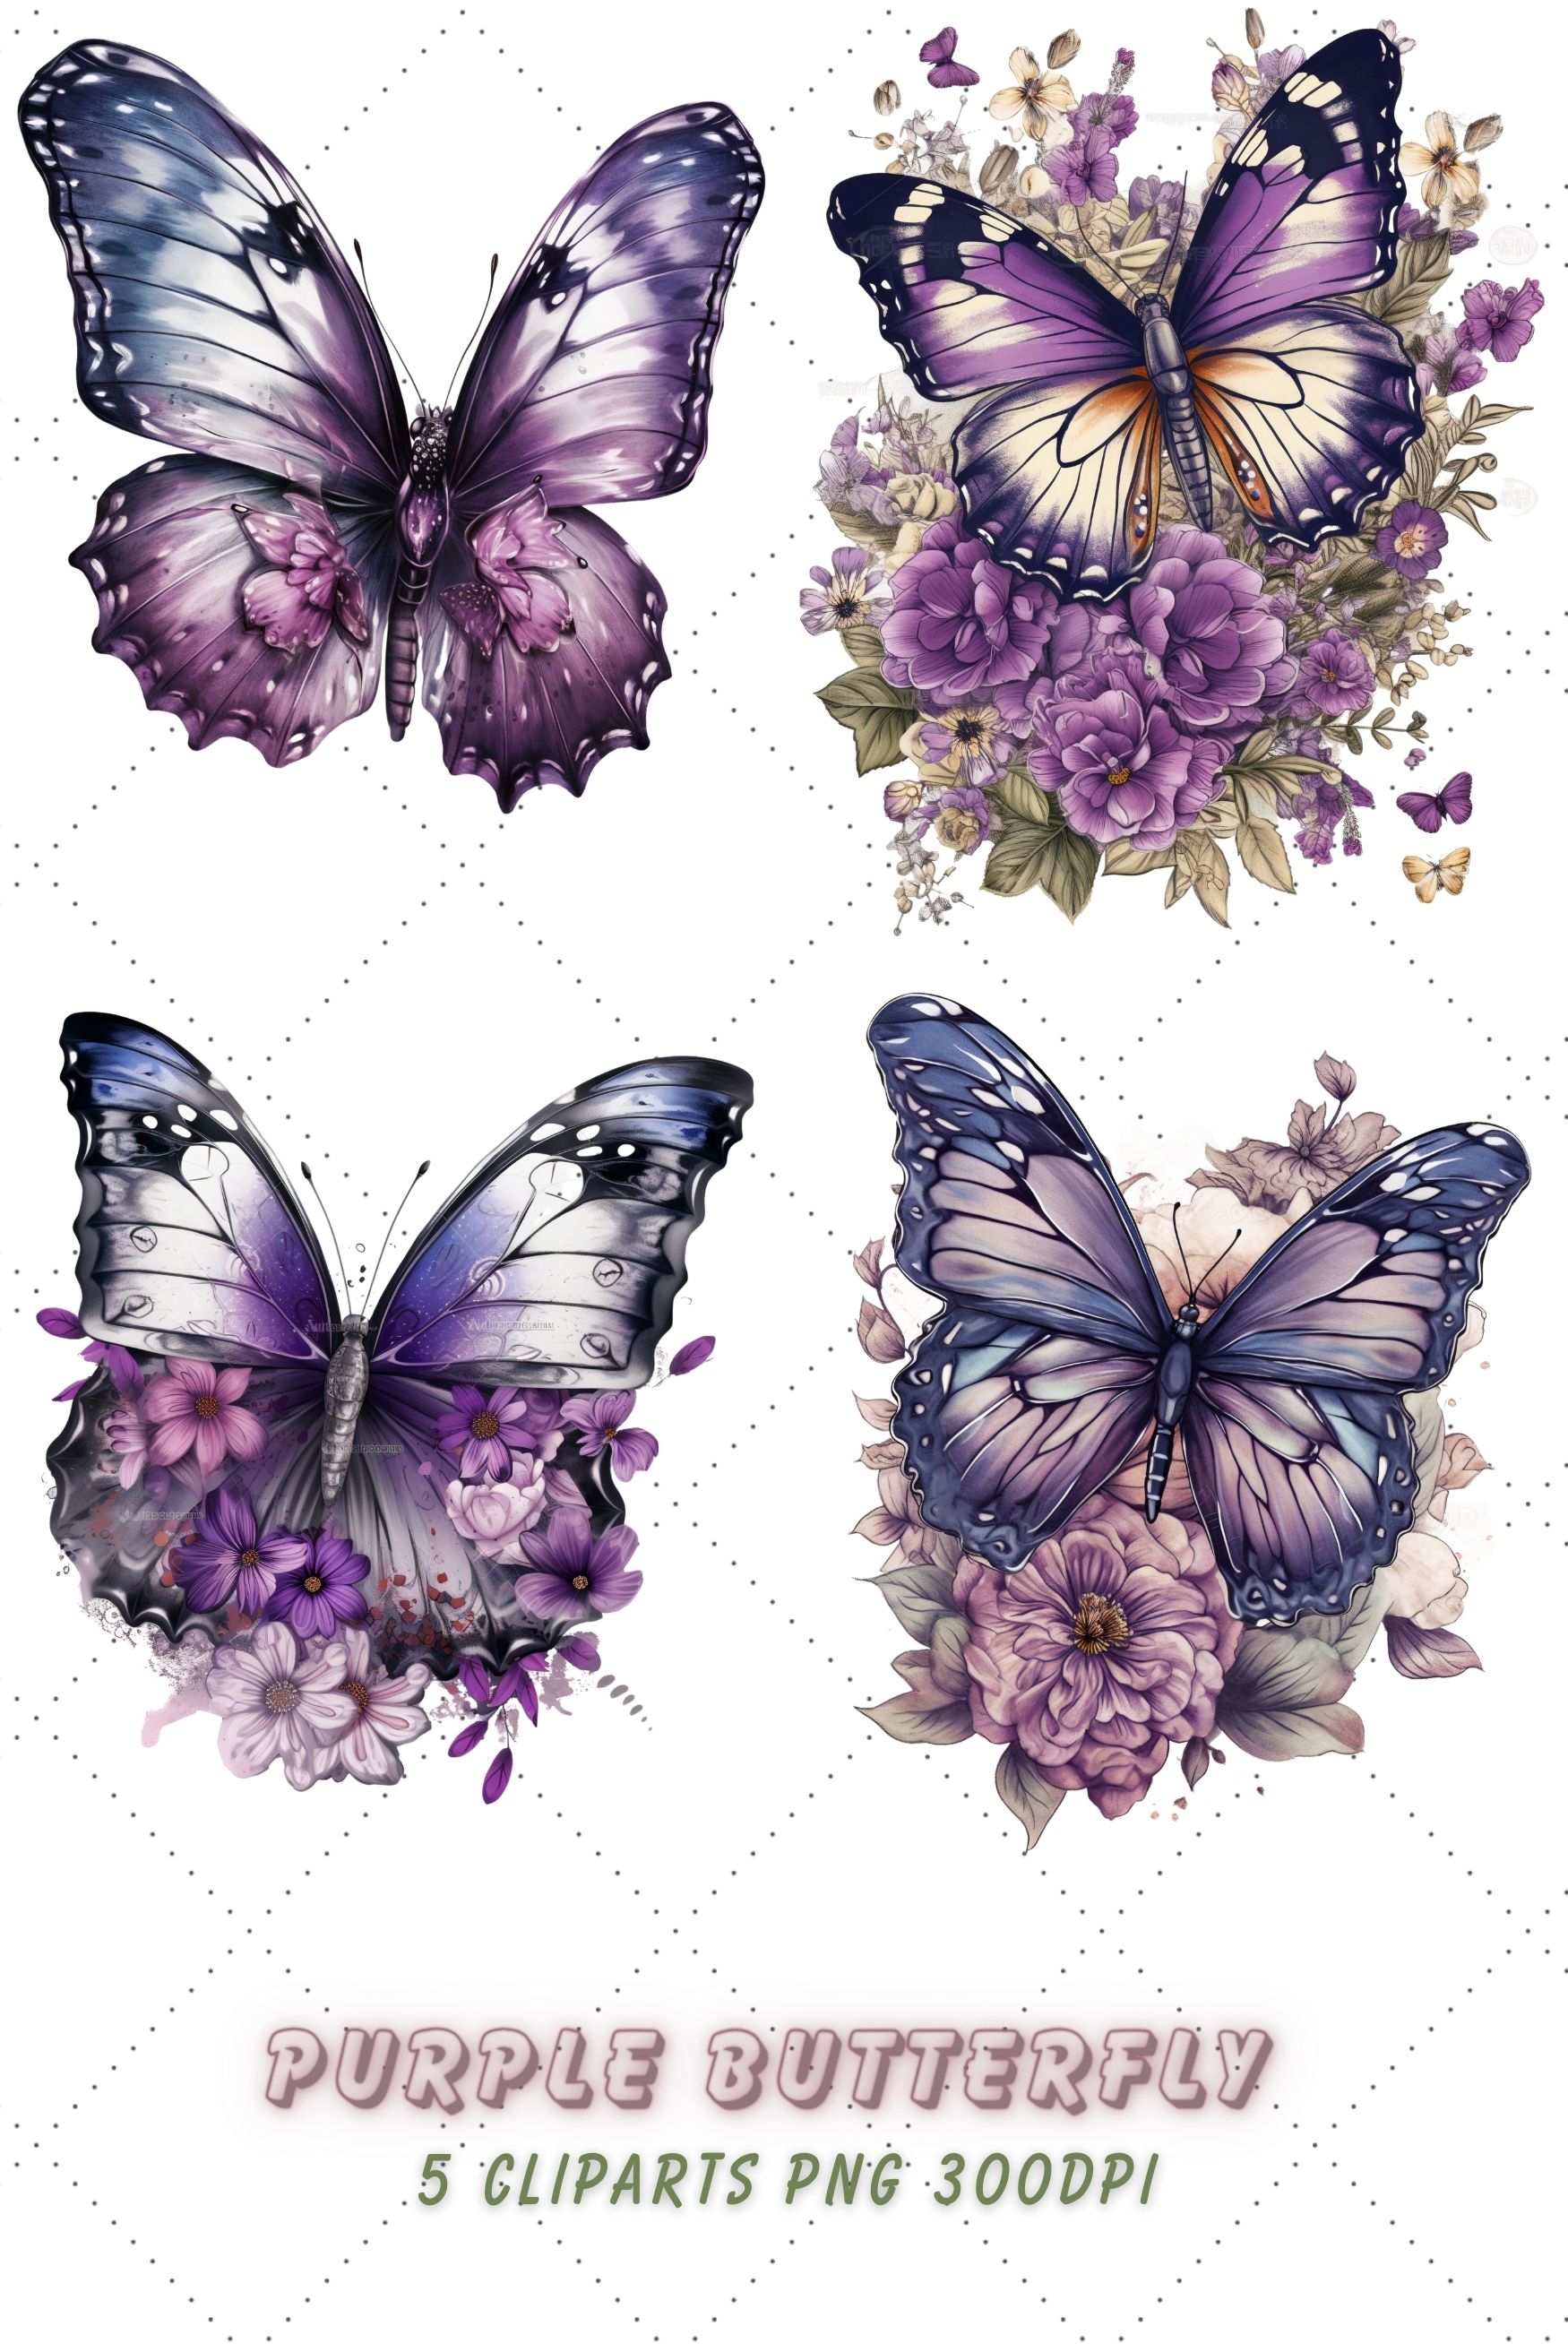 Purple Butterfly Sublimation Clipart Bundle pinterest preview image.